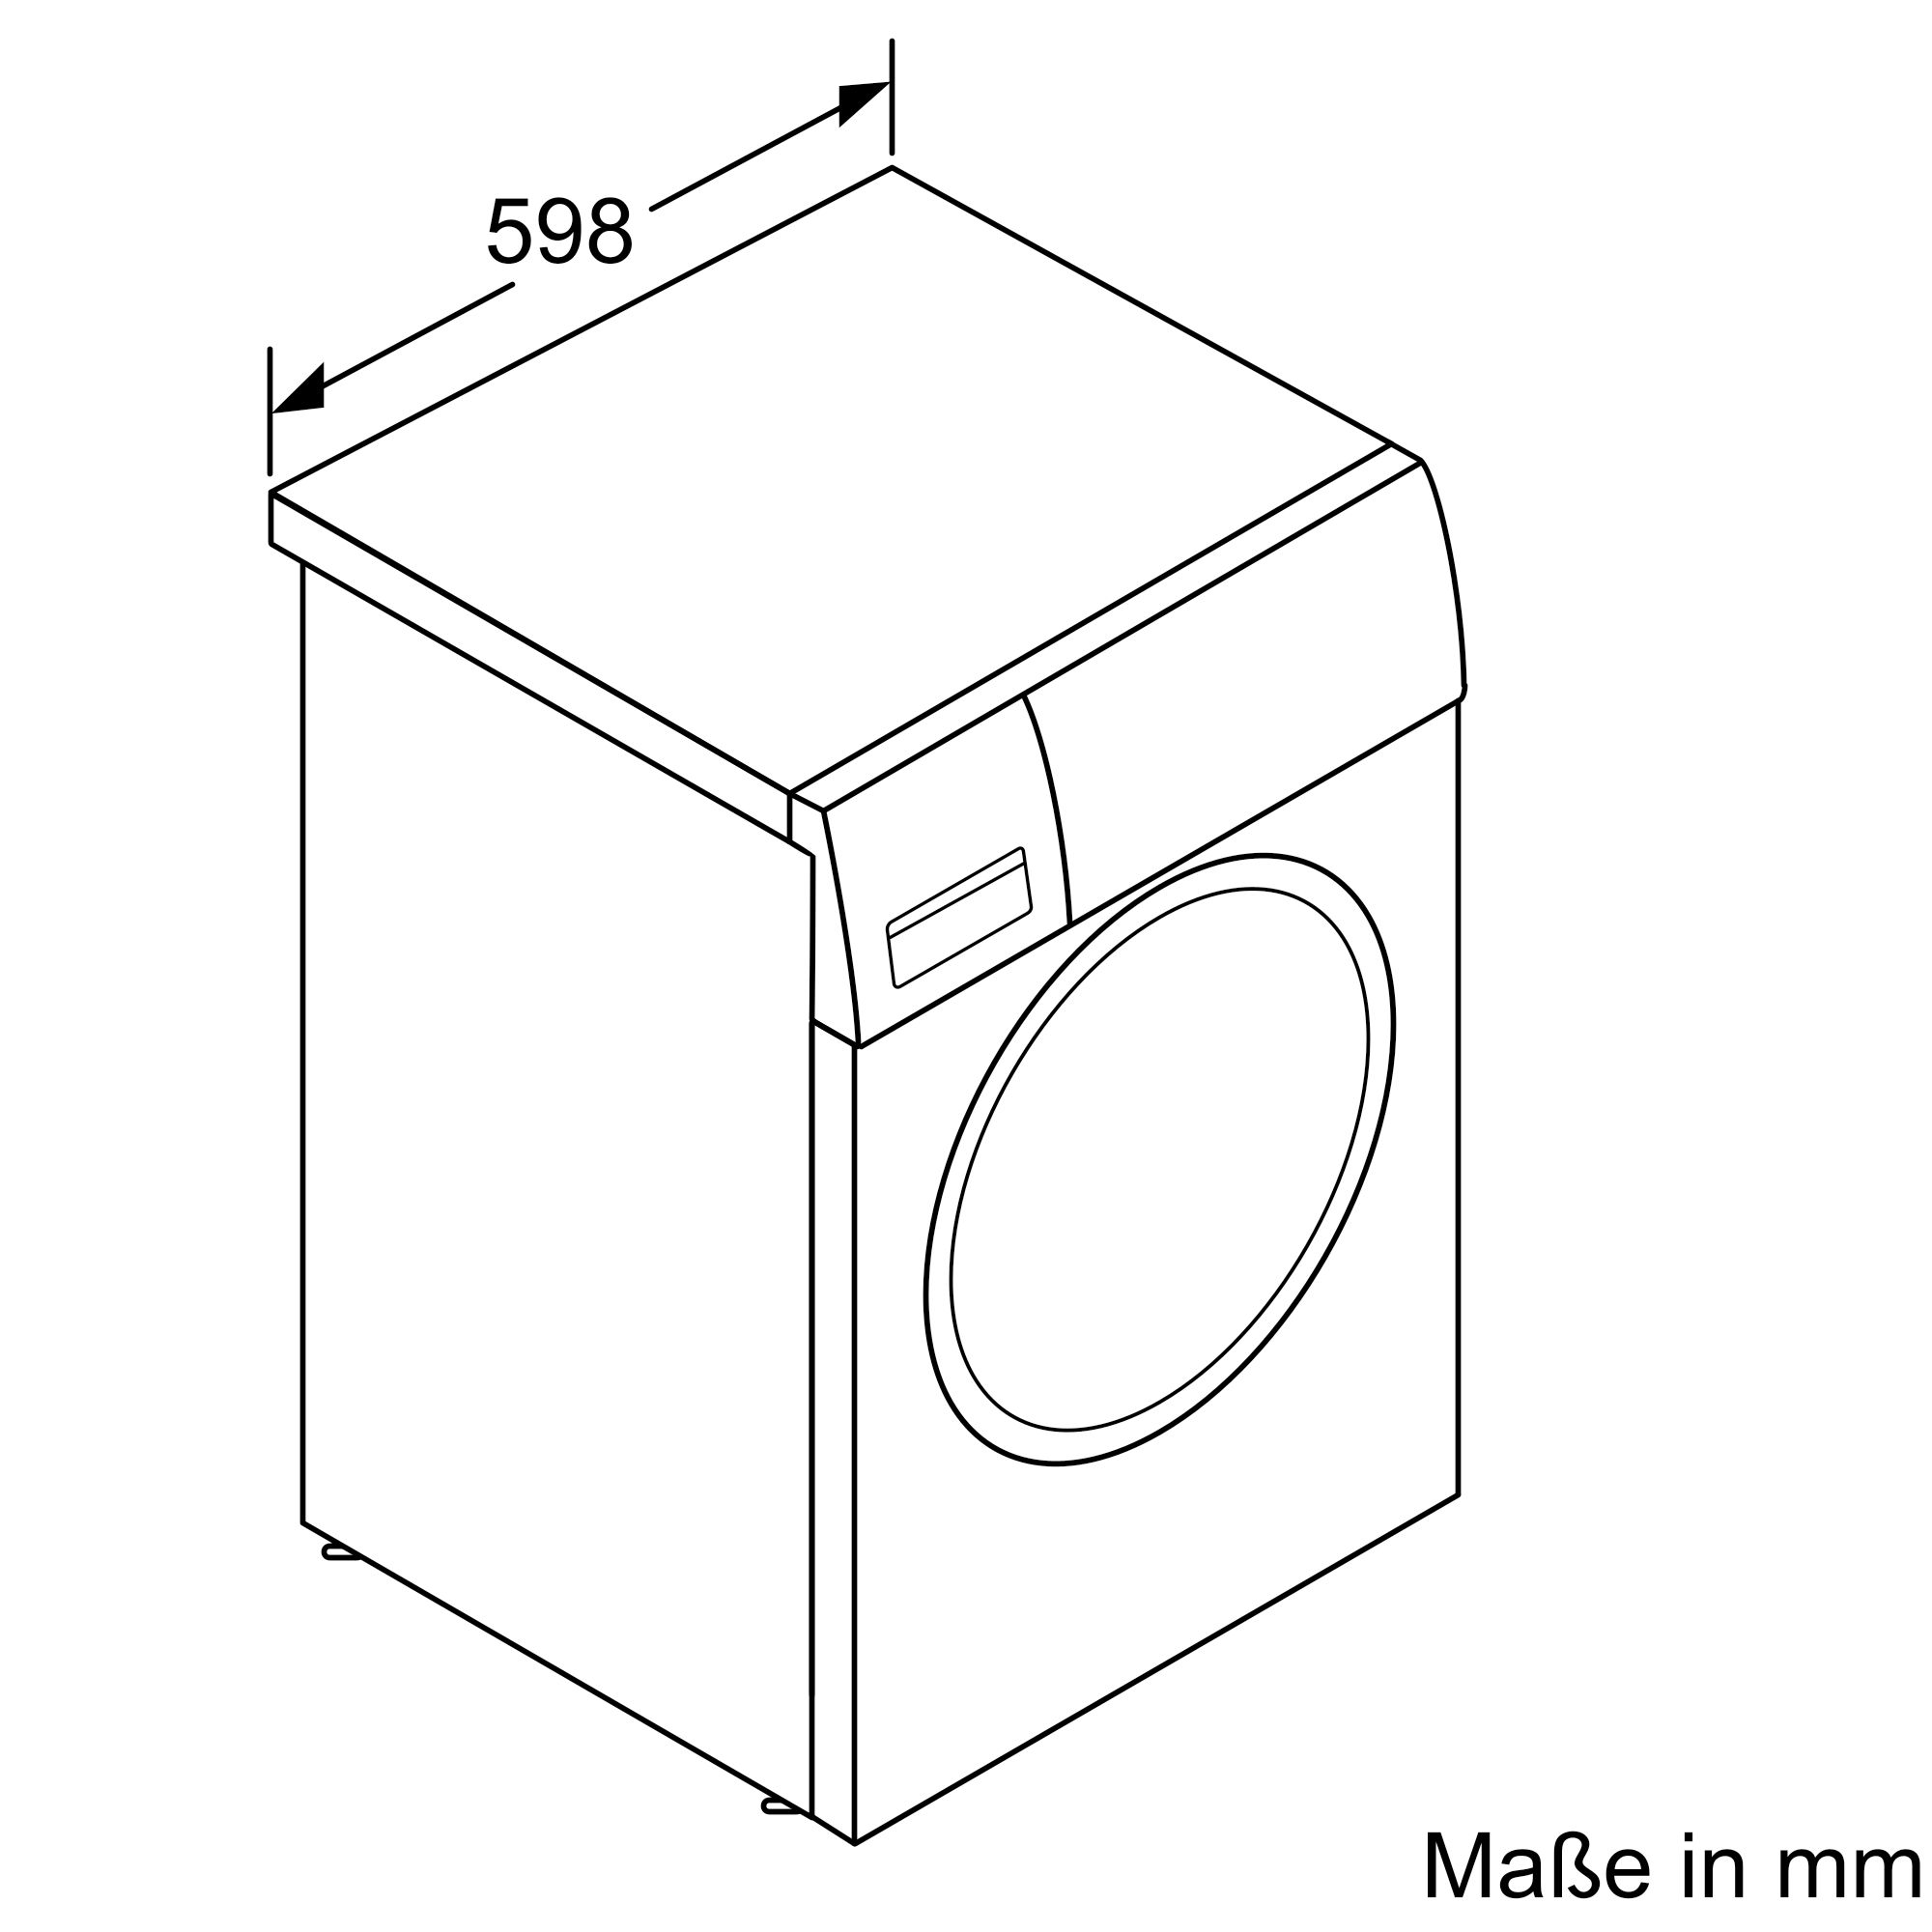 BOSCH WAU28U00 U/Min., C) kg, 6 Serie 1400 Waschmaschine (9,0